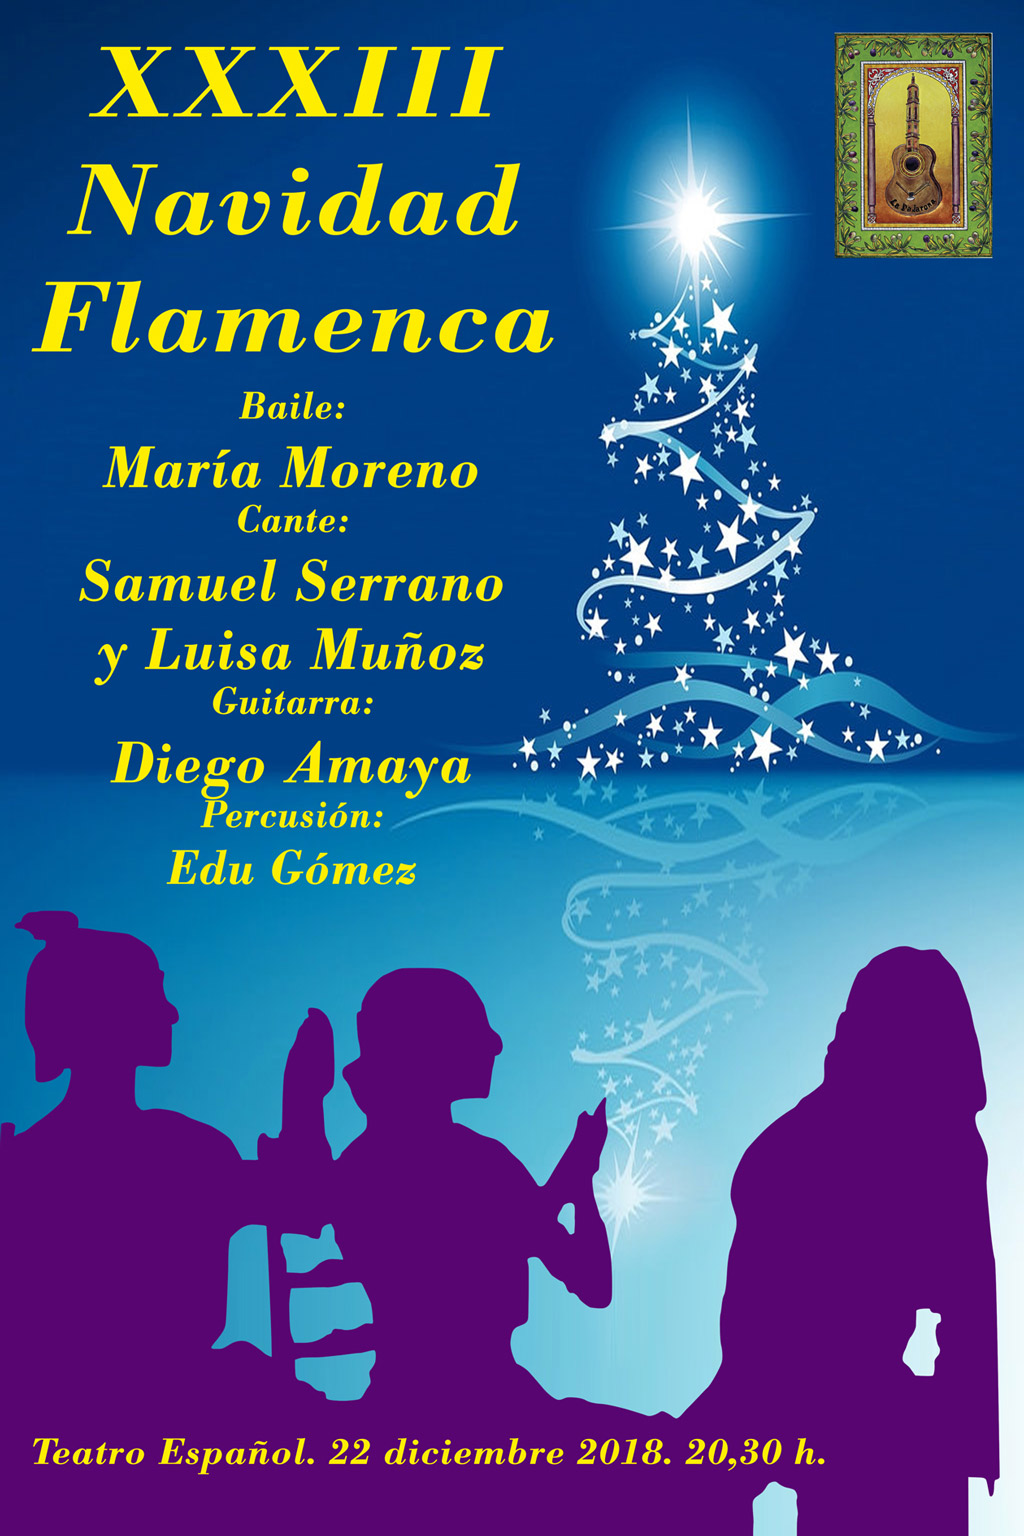 XXXIII Navidad Flamenca